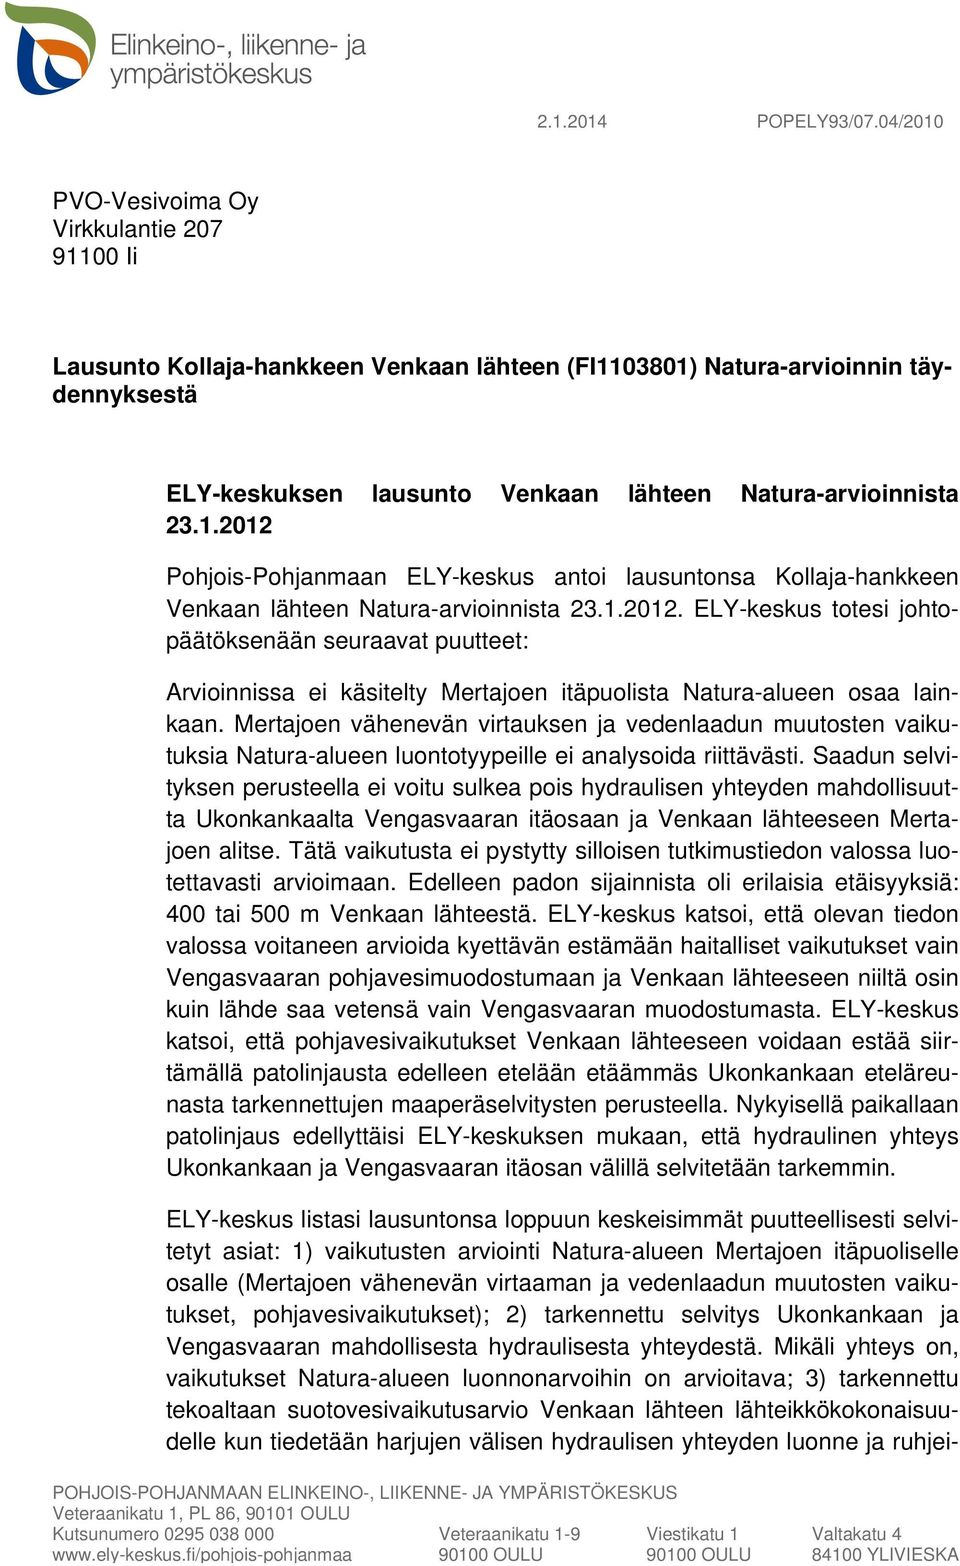 1.2012 Pohjois-Pohjanmaan ELY-keskus antoi lausuntonsa Kollaja-hankkeen Venkaan lähteen Natura-arvioinnista 23.1.2012. ELY-keskus totesi johtopäätöksenään seuraavat puutteet: Arvioinnissa ei käsitelty Mertajoen itäpuolista Natura-alueen osaa lainkaan.